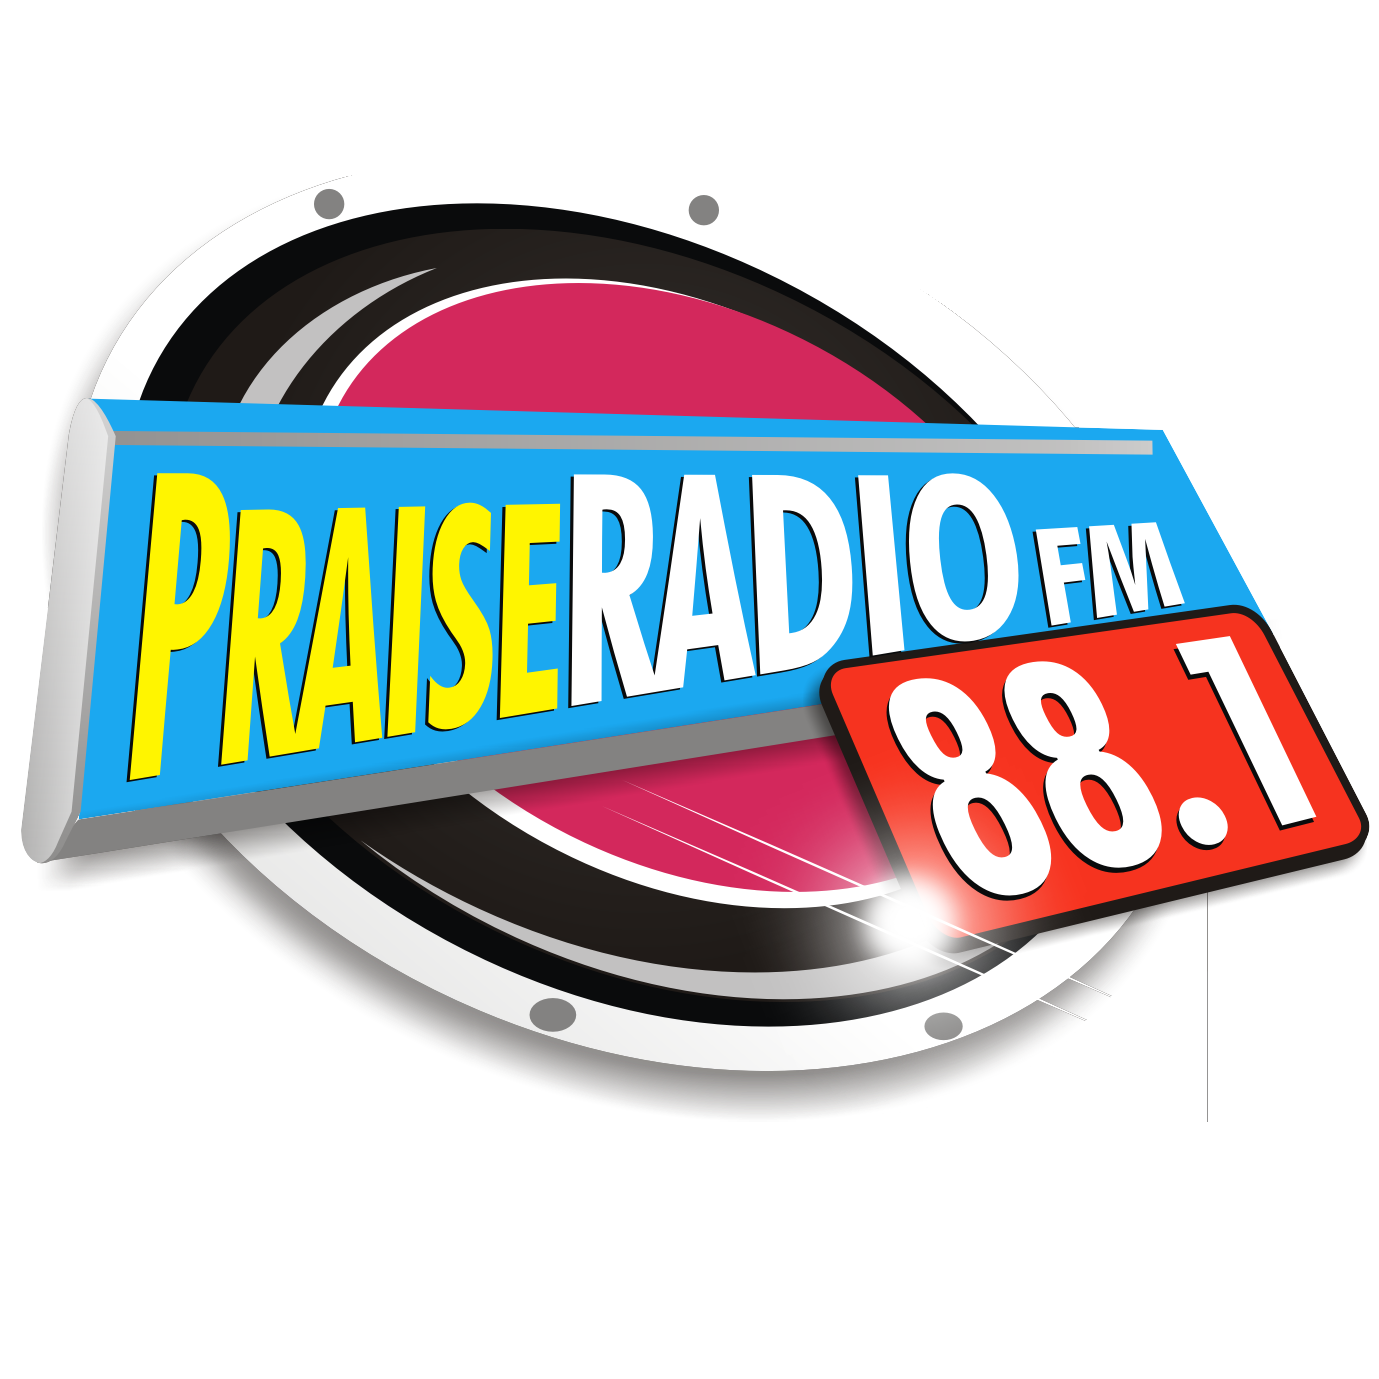 Praise Radio 88.1 FM